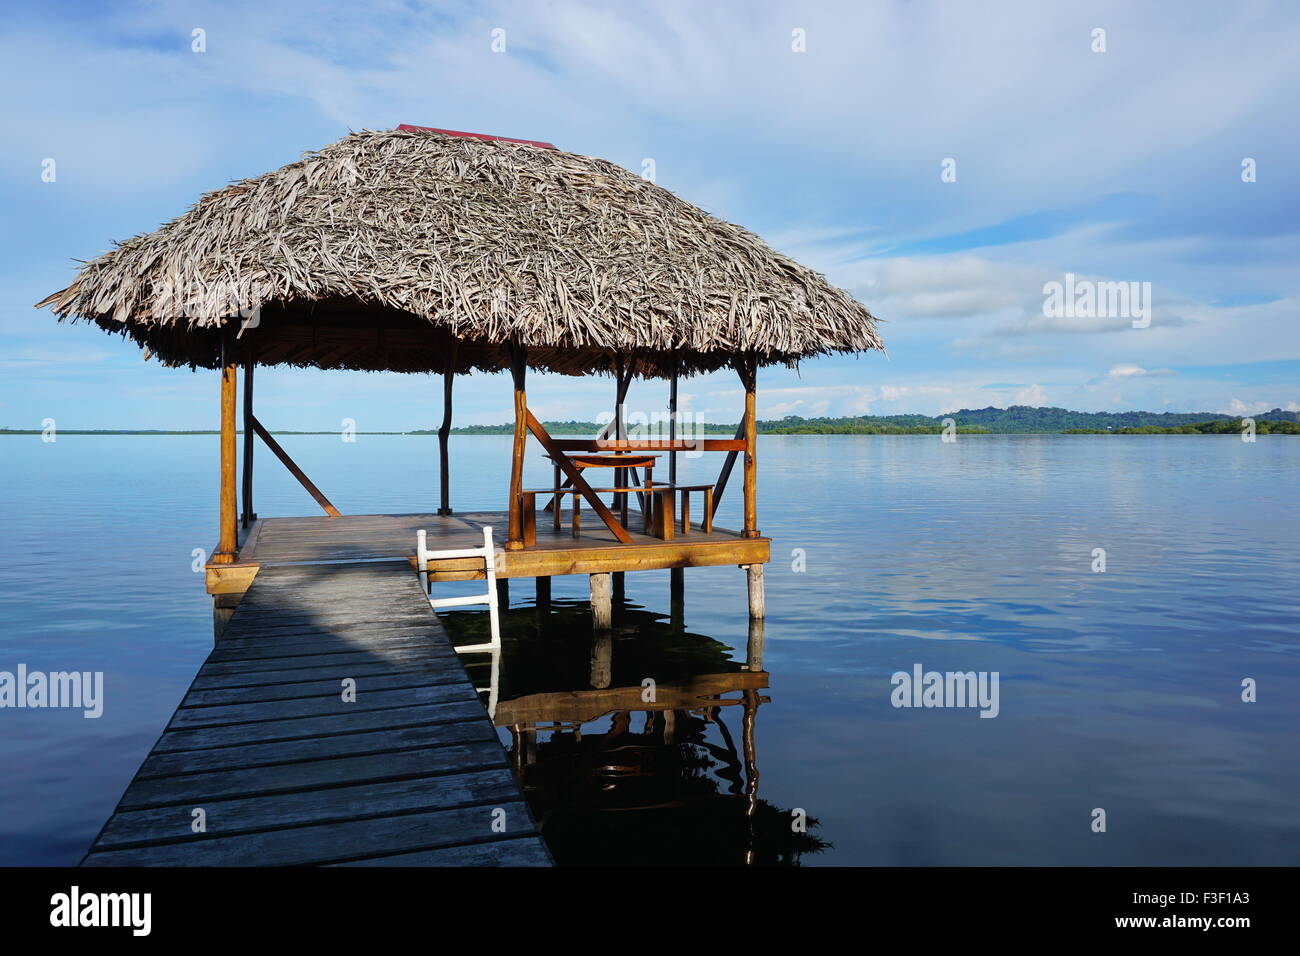 Hutte palapa sur l'eau avec toit de chaume en palm lagon, mer des Caraïbes, l'Amérique centrale, le Panama Banque D'Images